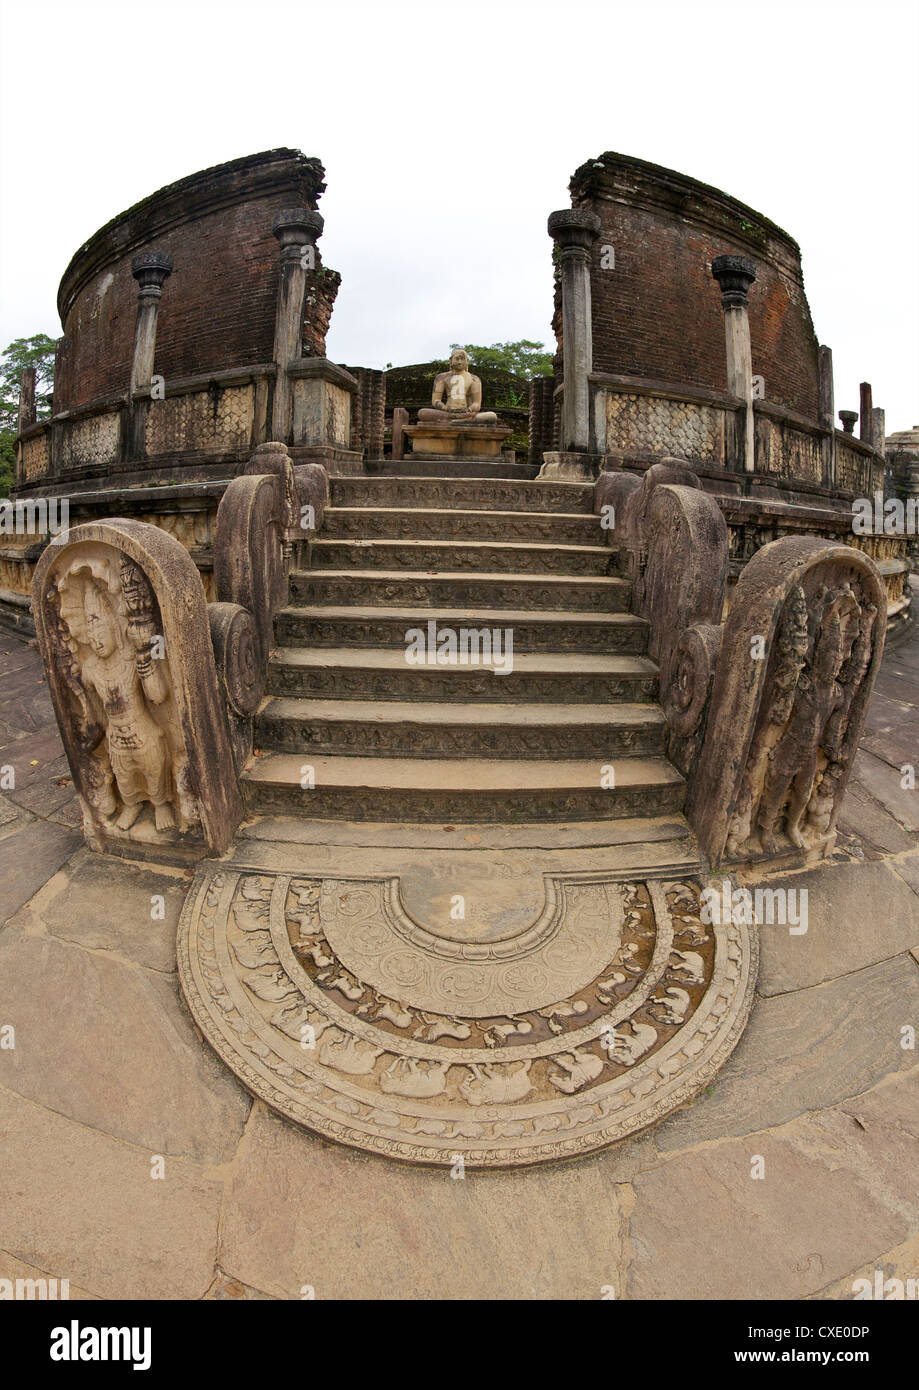 La pietra di luna e pietre di guardia, ingresso al Vatagade, del XII secolo, Sito Patrimonio Mondiale dell'UNESCO, Polonnaruwa, Sri Lanka, Asia Foto Stock